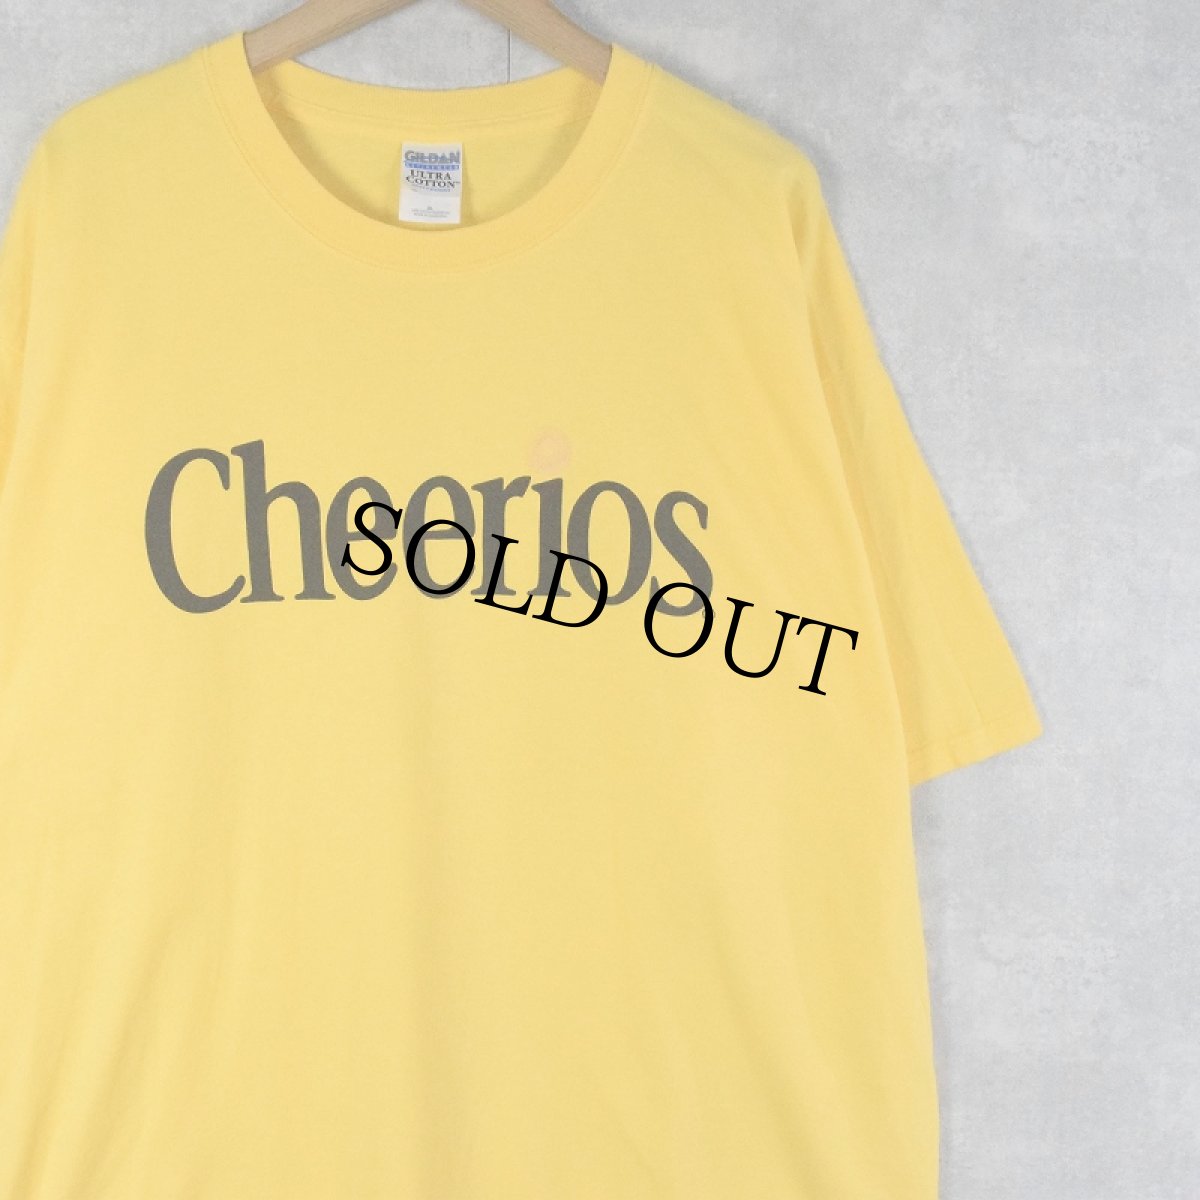 画像1: Cheerios シリアルプリントTシャツ XL (1)